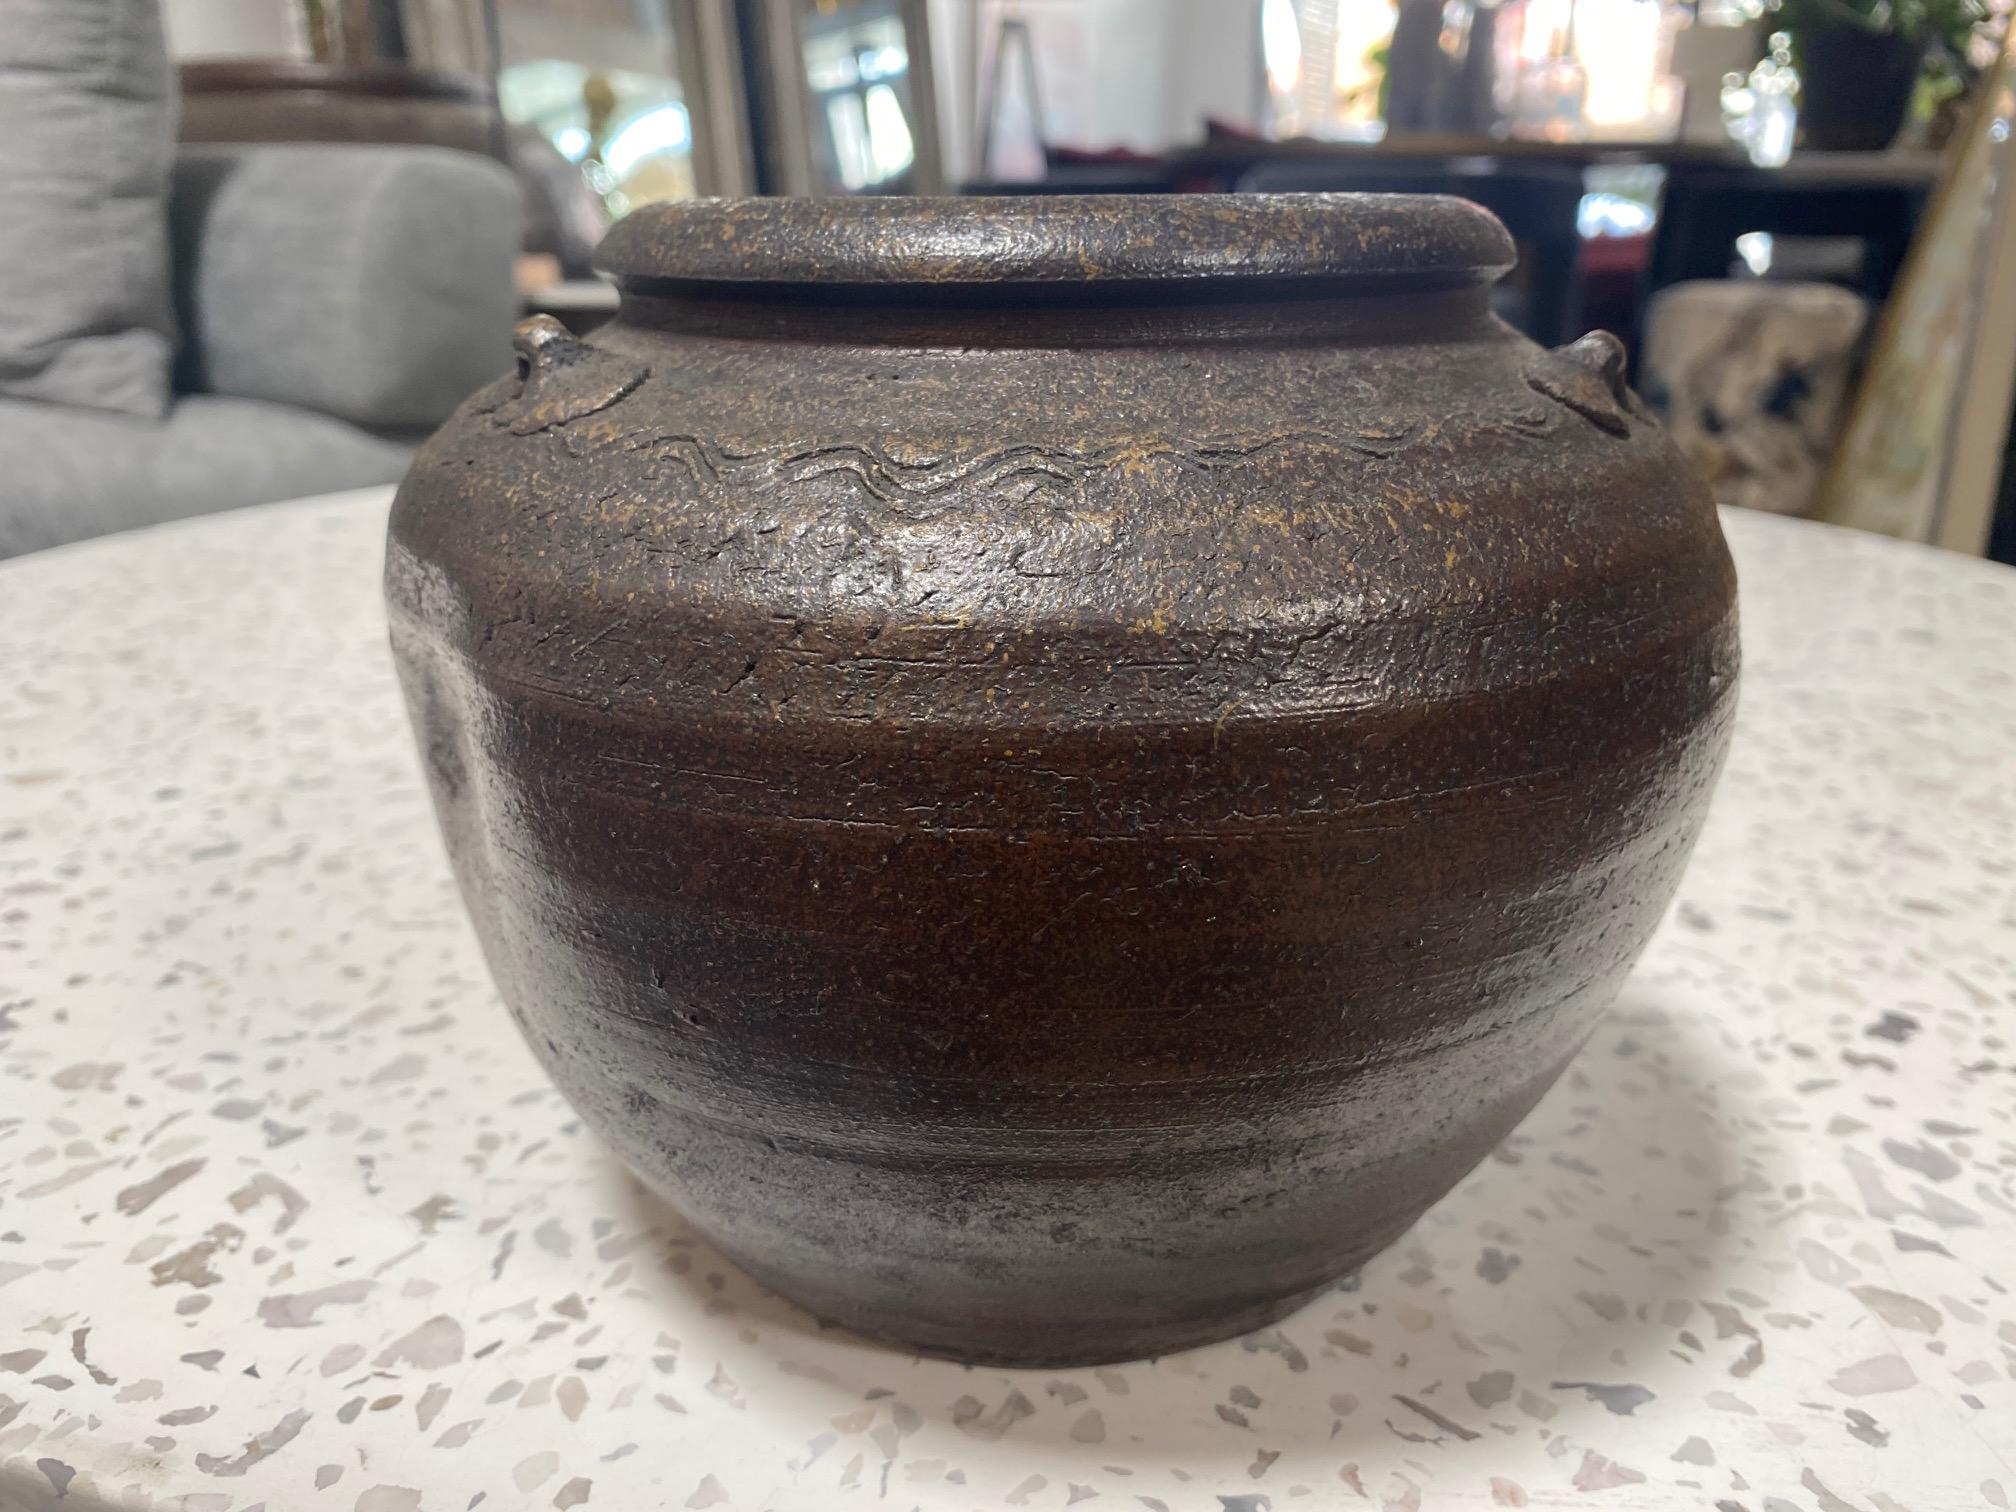 Stoneware Kaneshige Toyo National Treasure Signed Japanese Bizen Pottery Tsubo Jar Vase For Sale